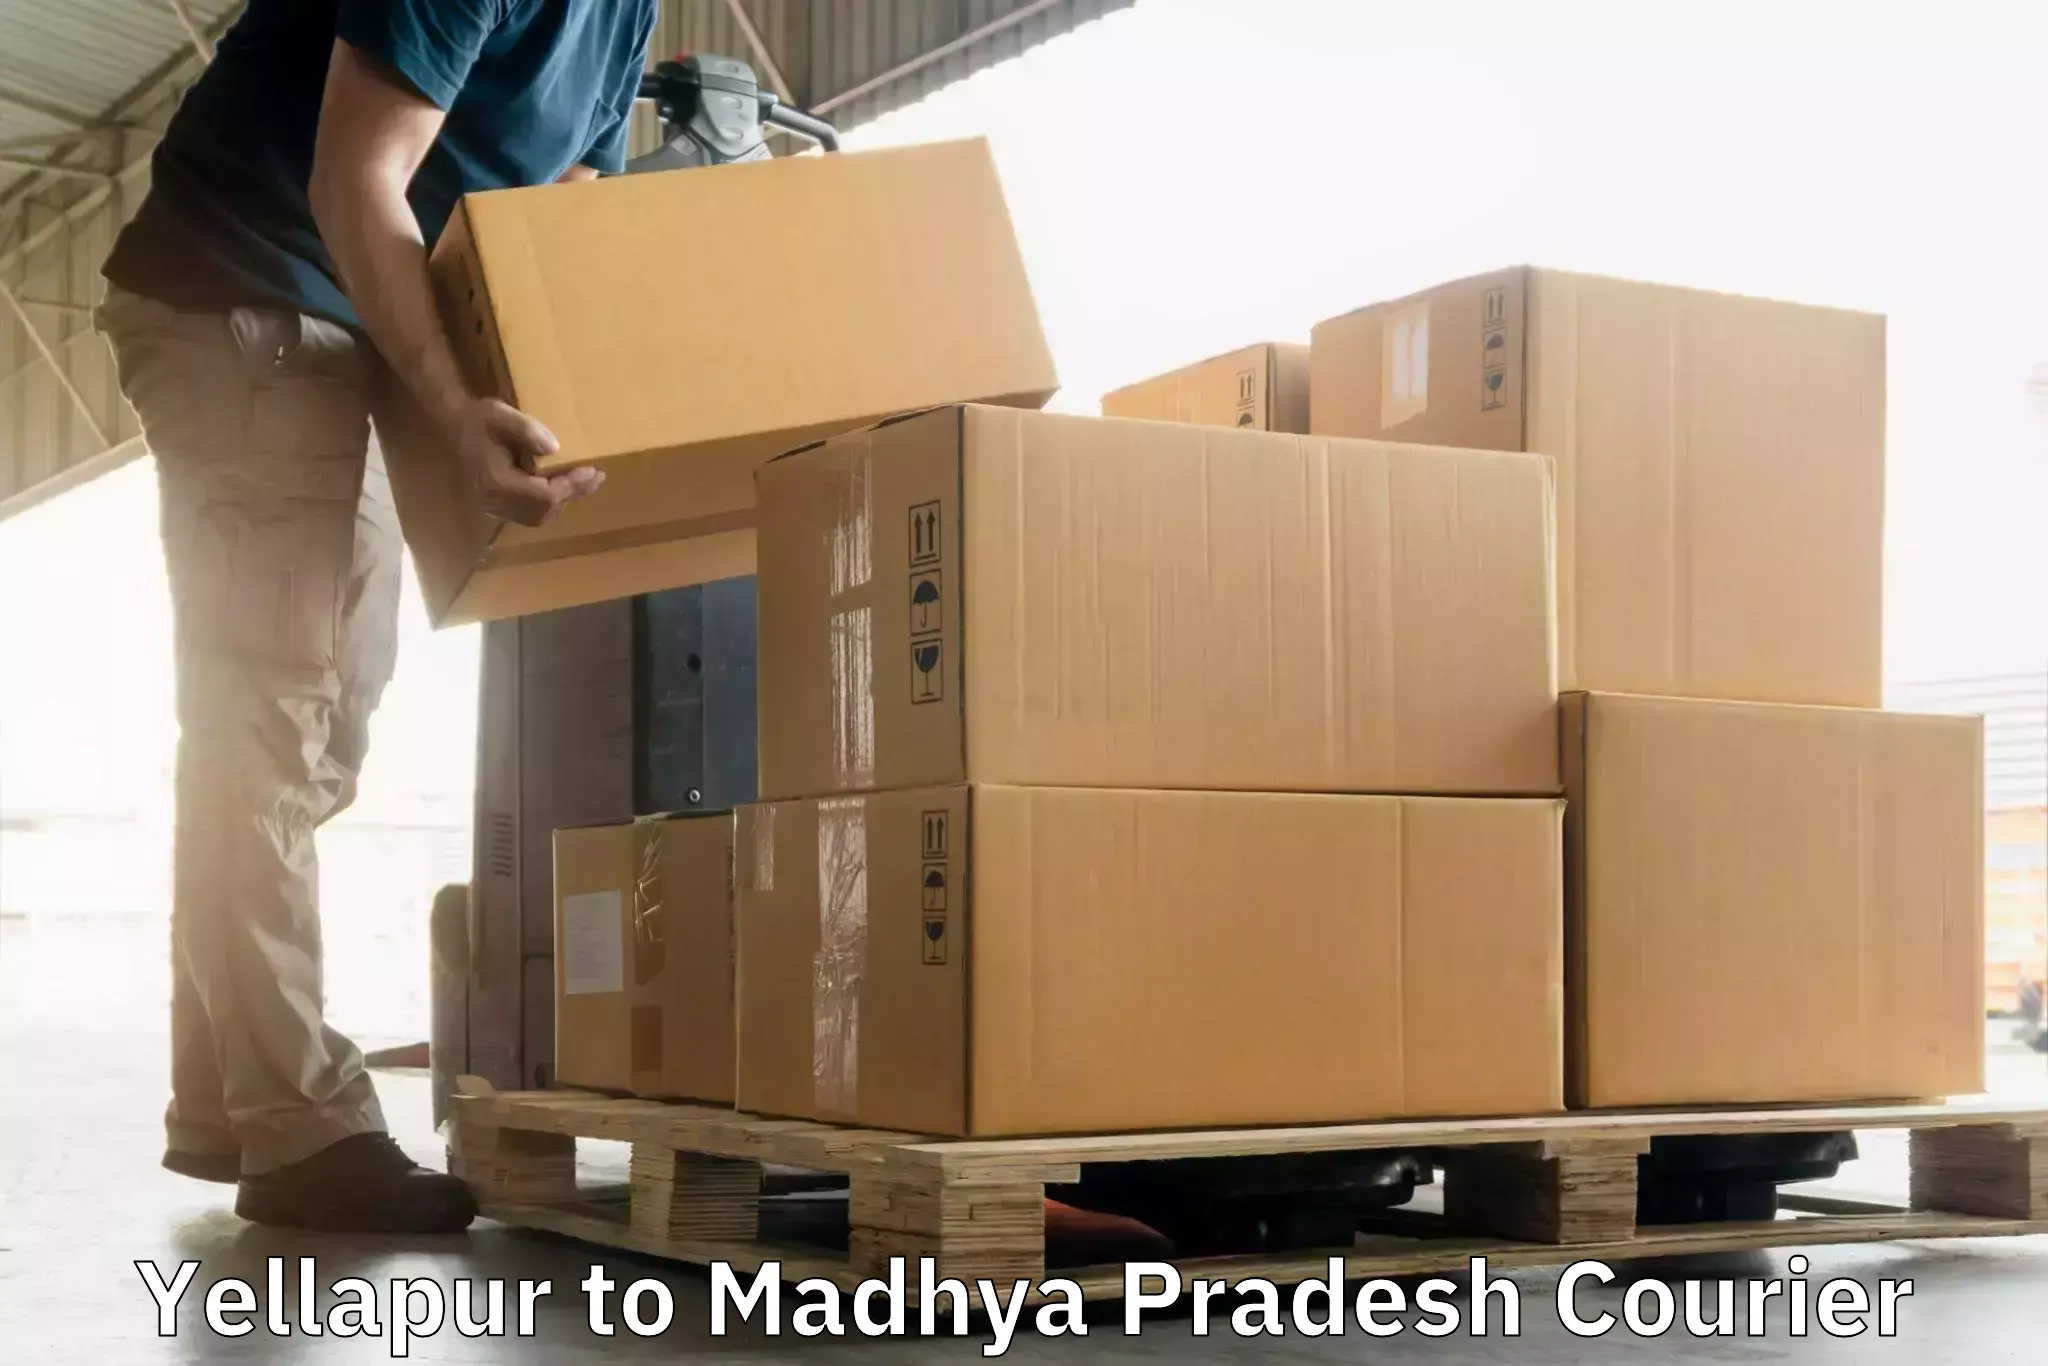 Premium courier services in Yellapur to Shajapur